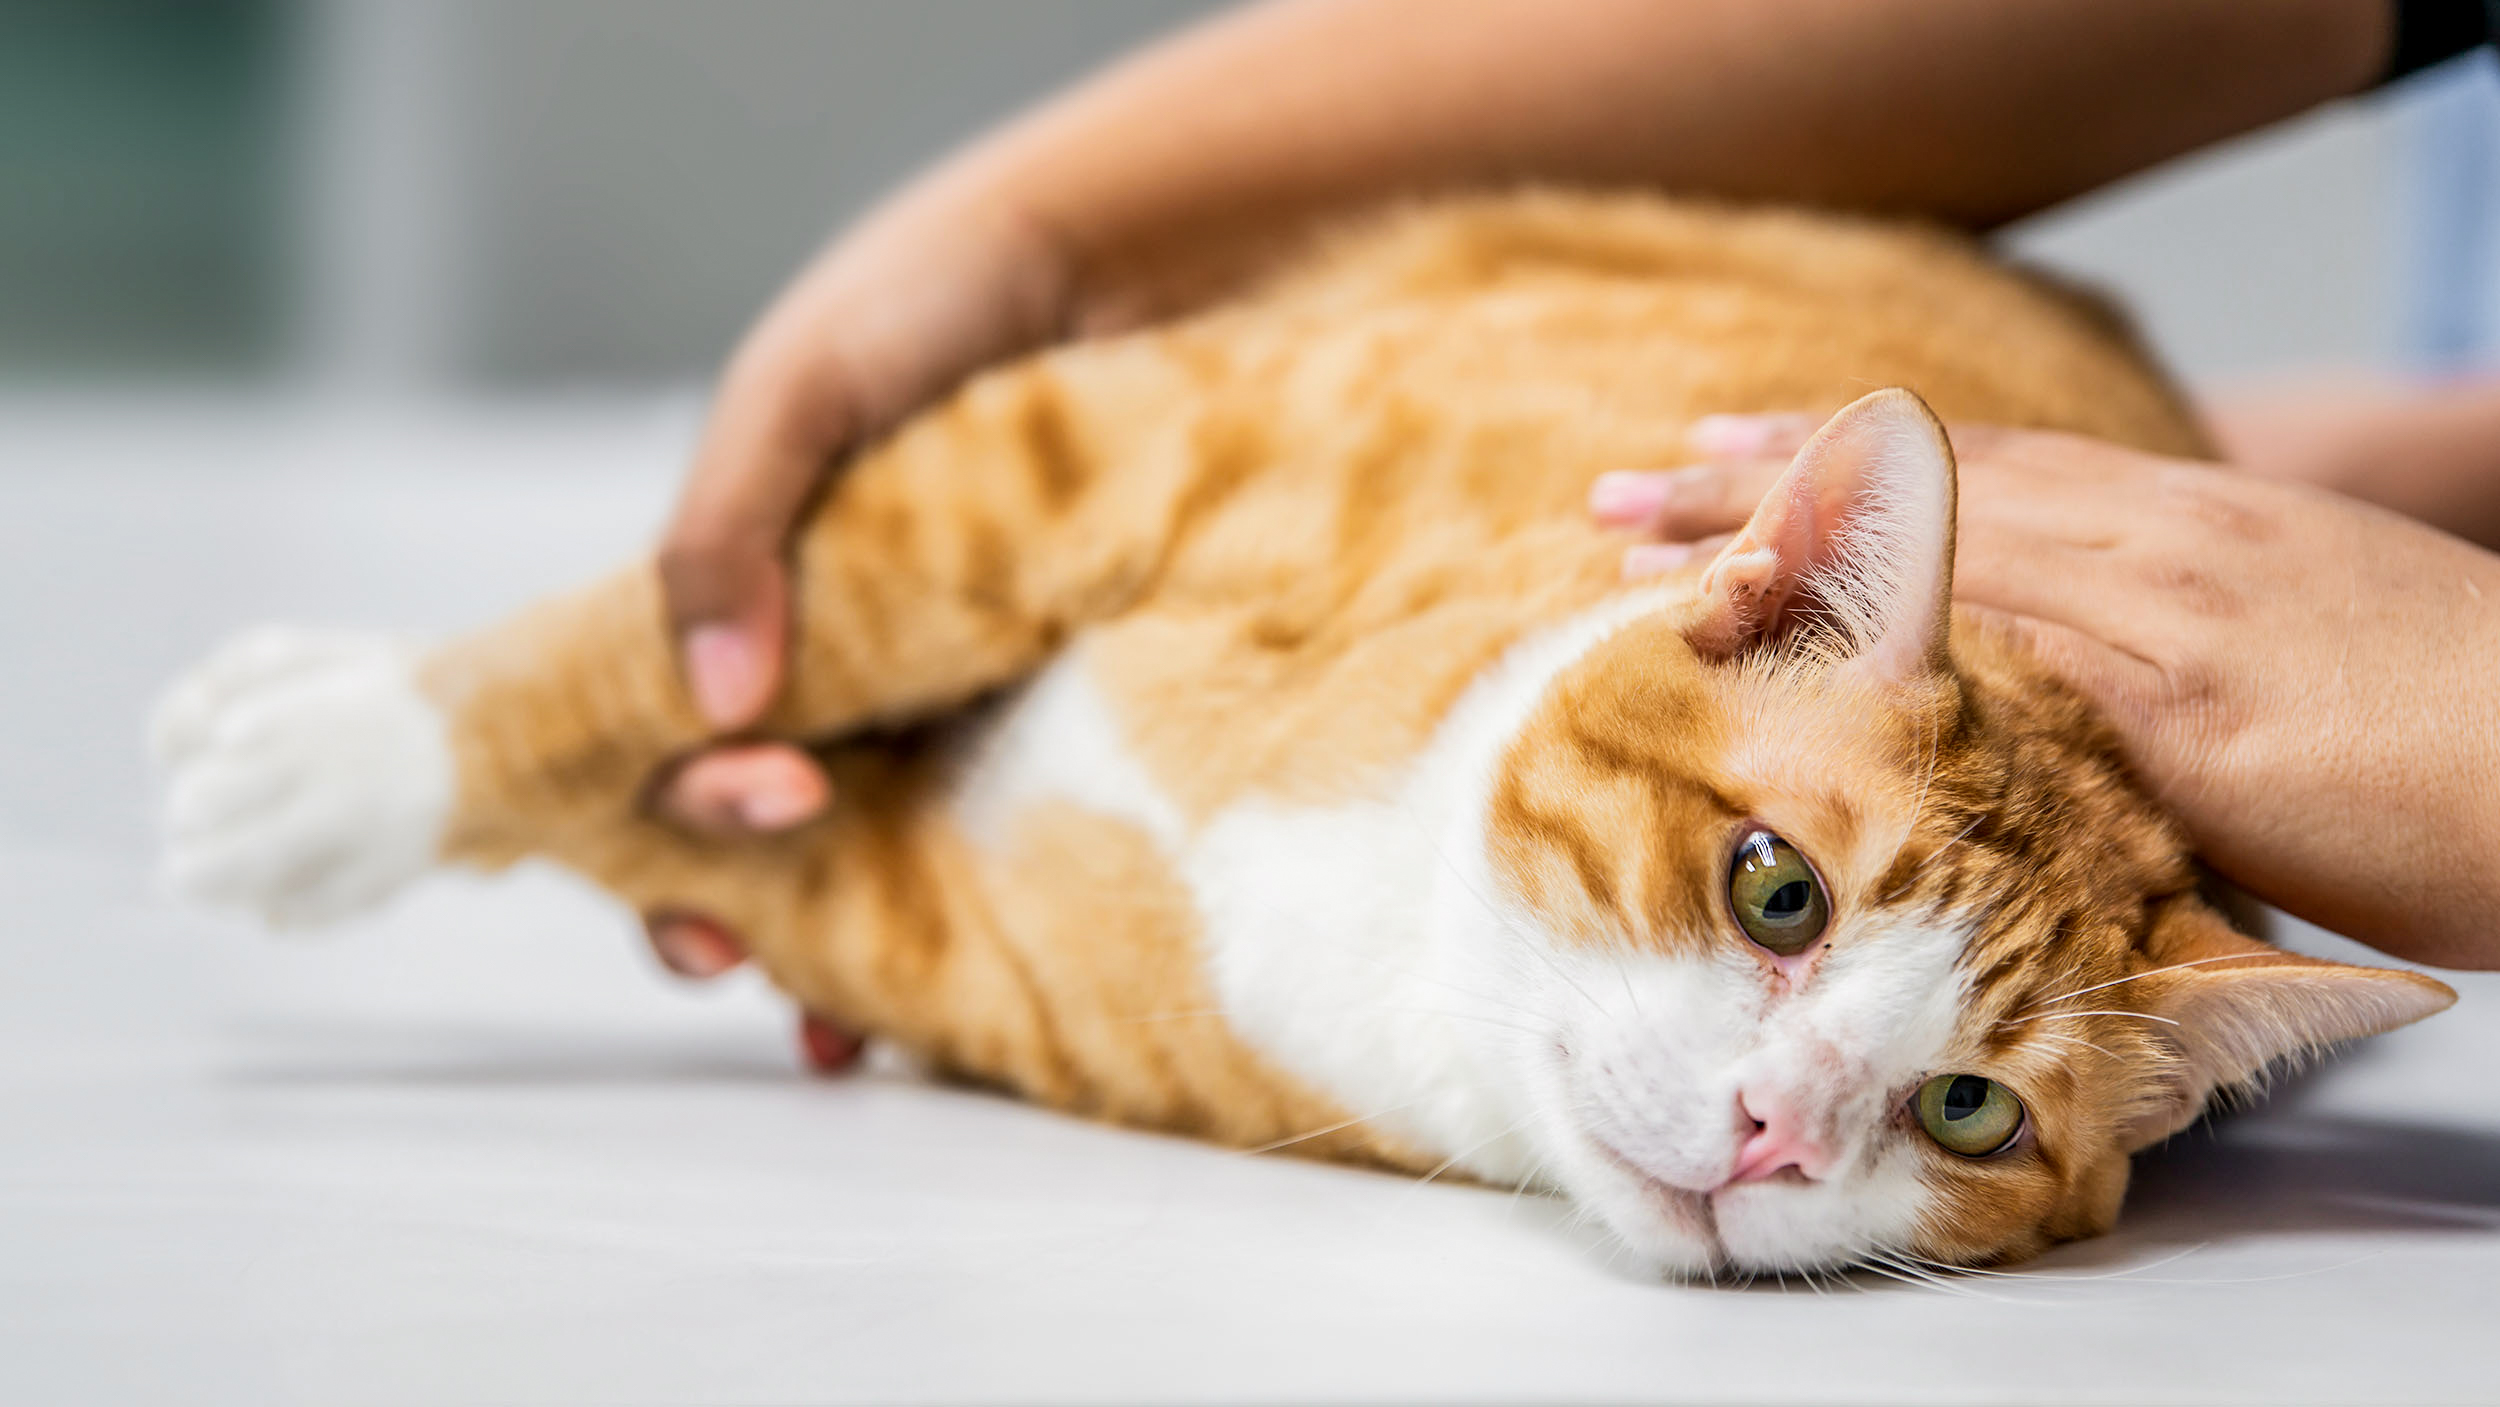 Ausgewachsene Katze wird auf einem Untersuchungstisch von einem Tierarzt untersucht.